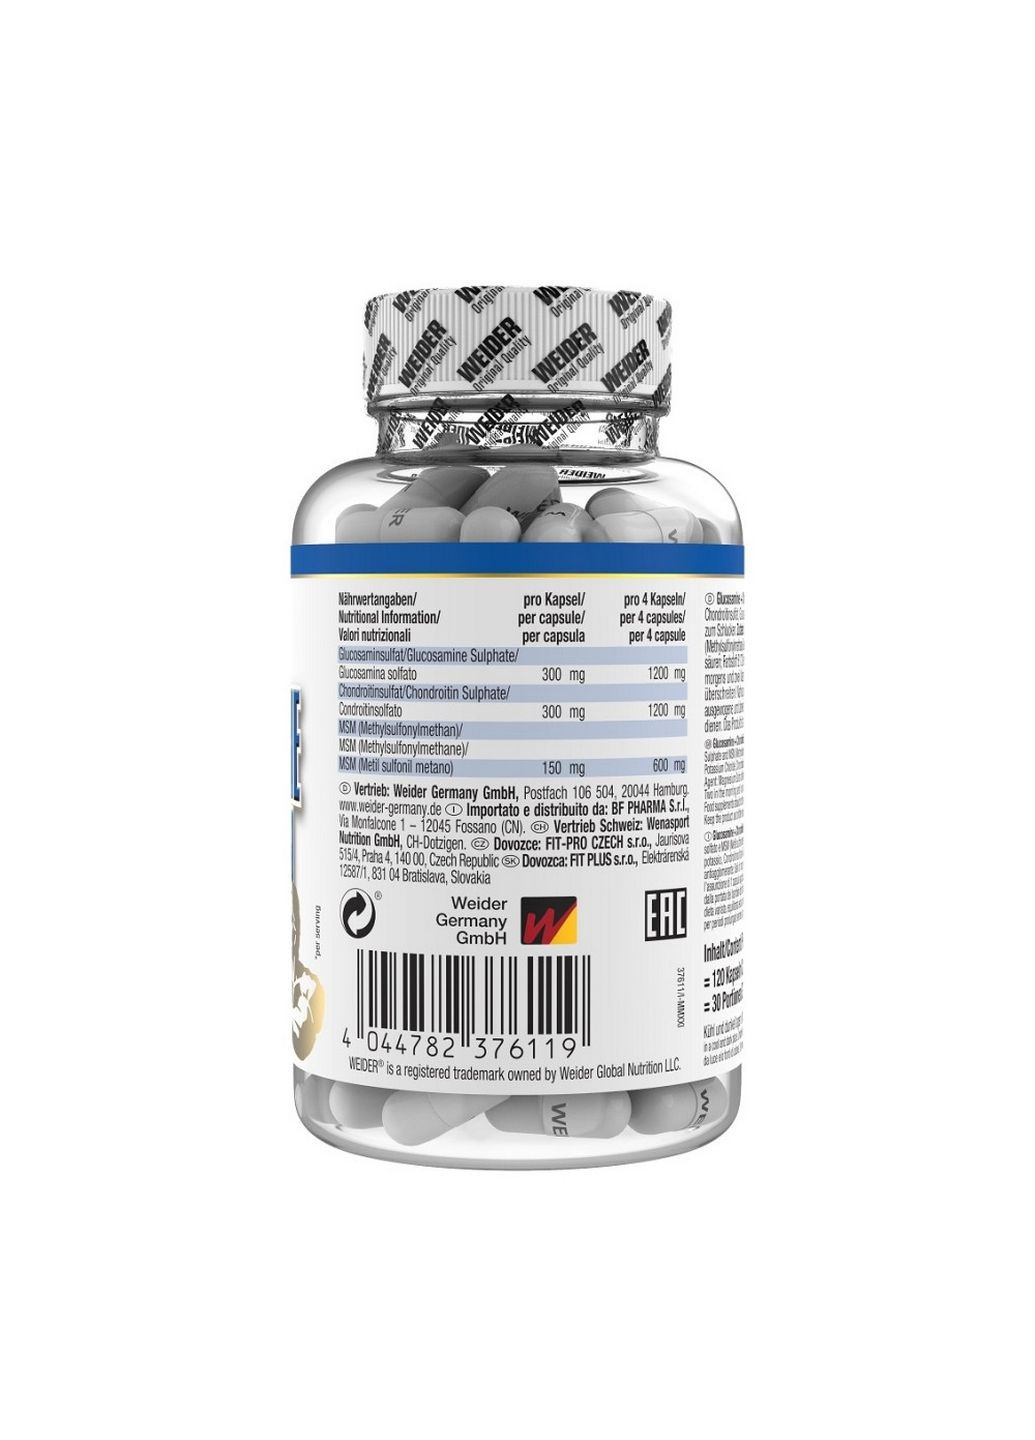 Препарат для суставов и связок Glucosamine Chondroitin plus MSM, 120 капсул Weider (293338735)